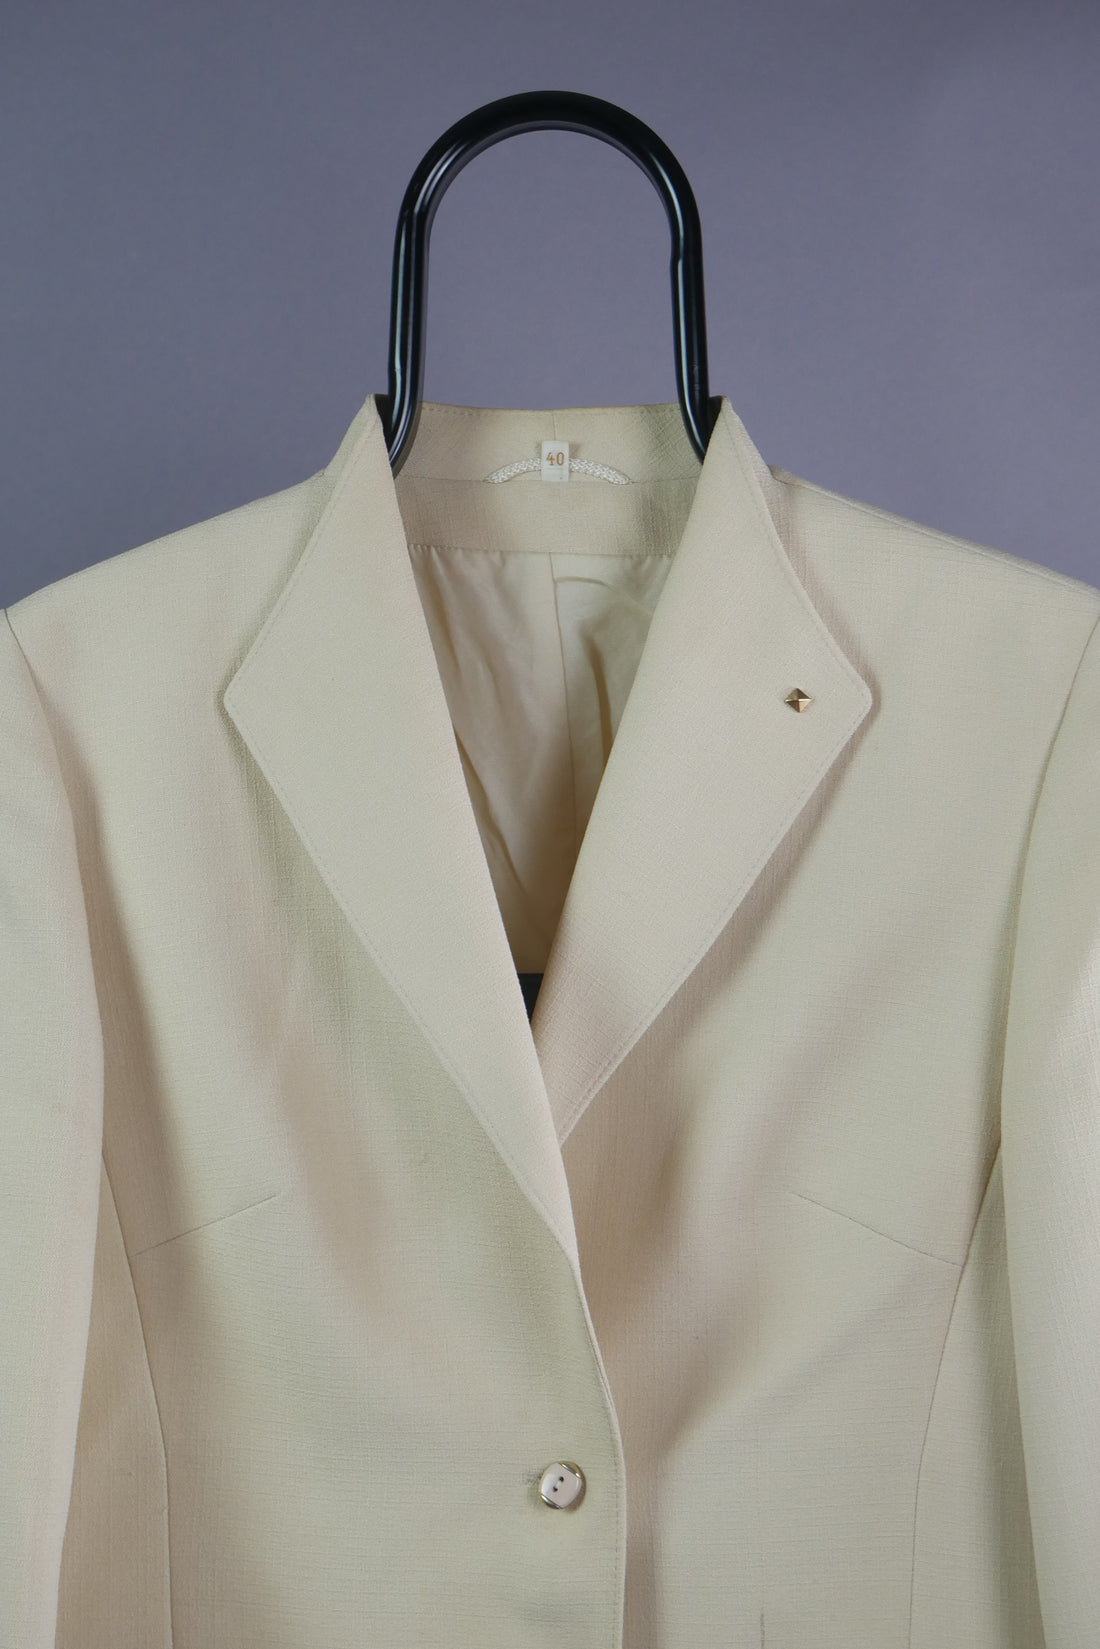 The Classic Vintage Suit Jacket (UK12)